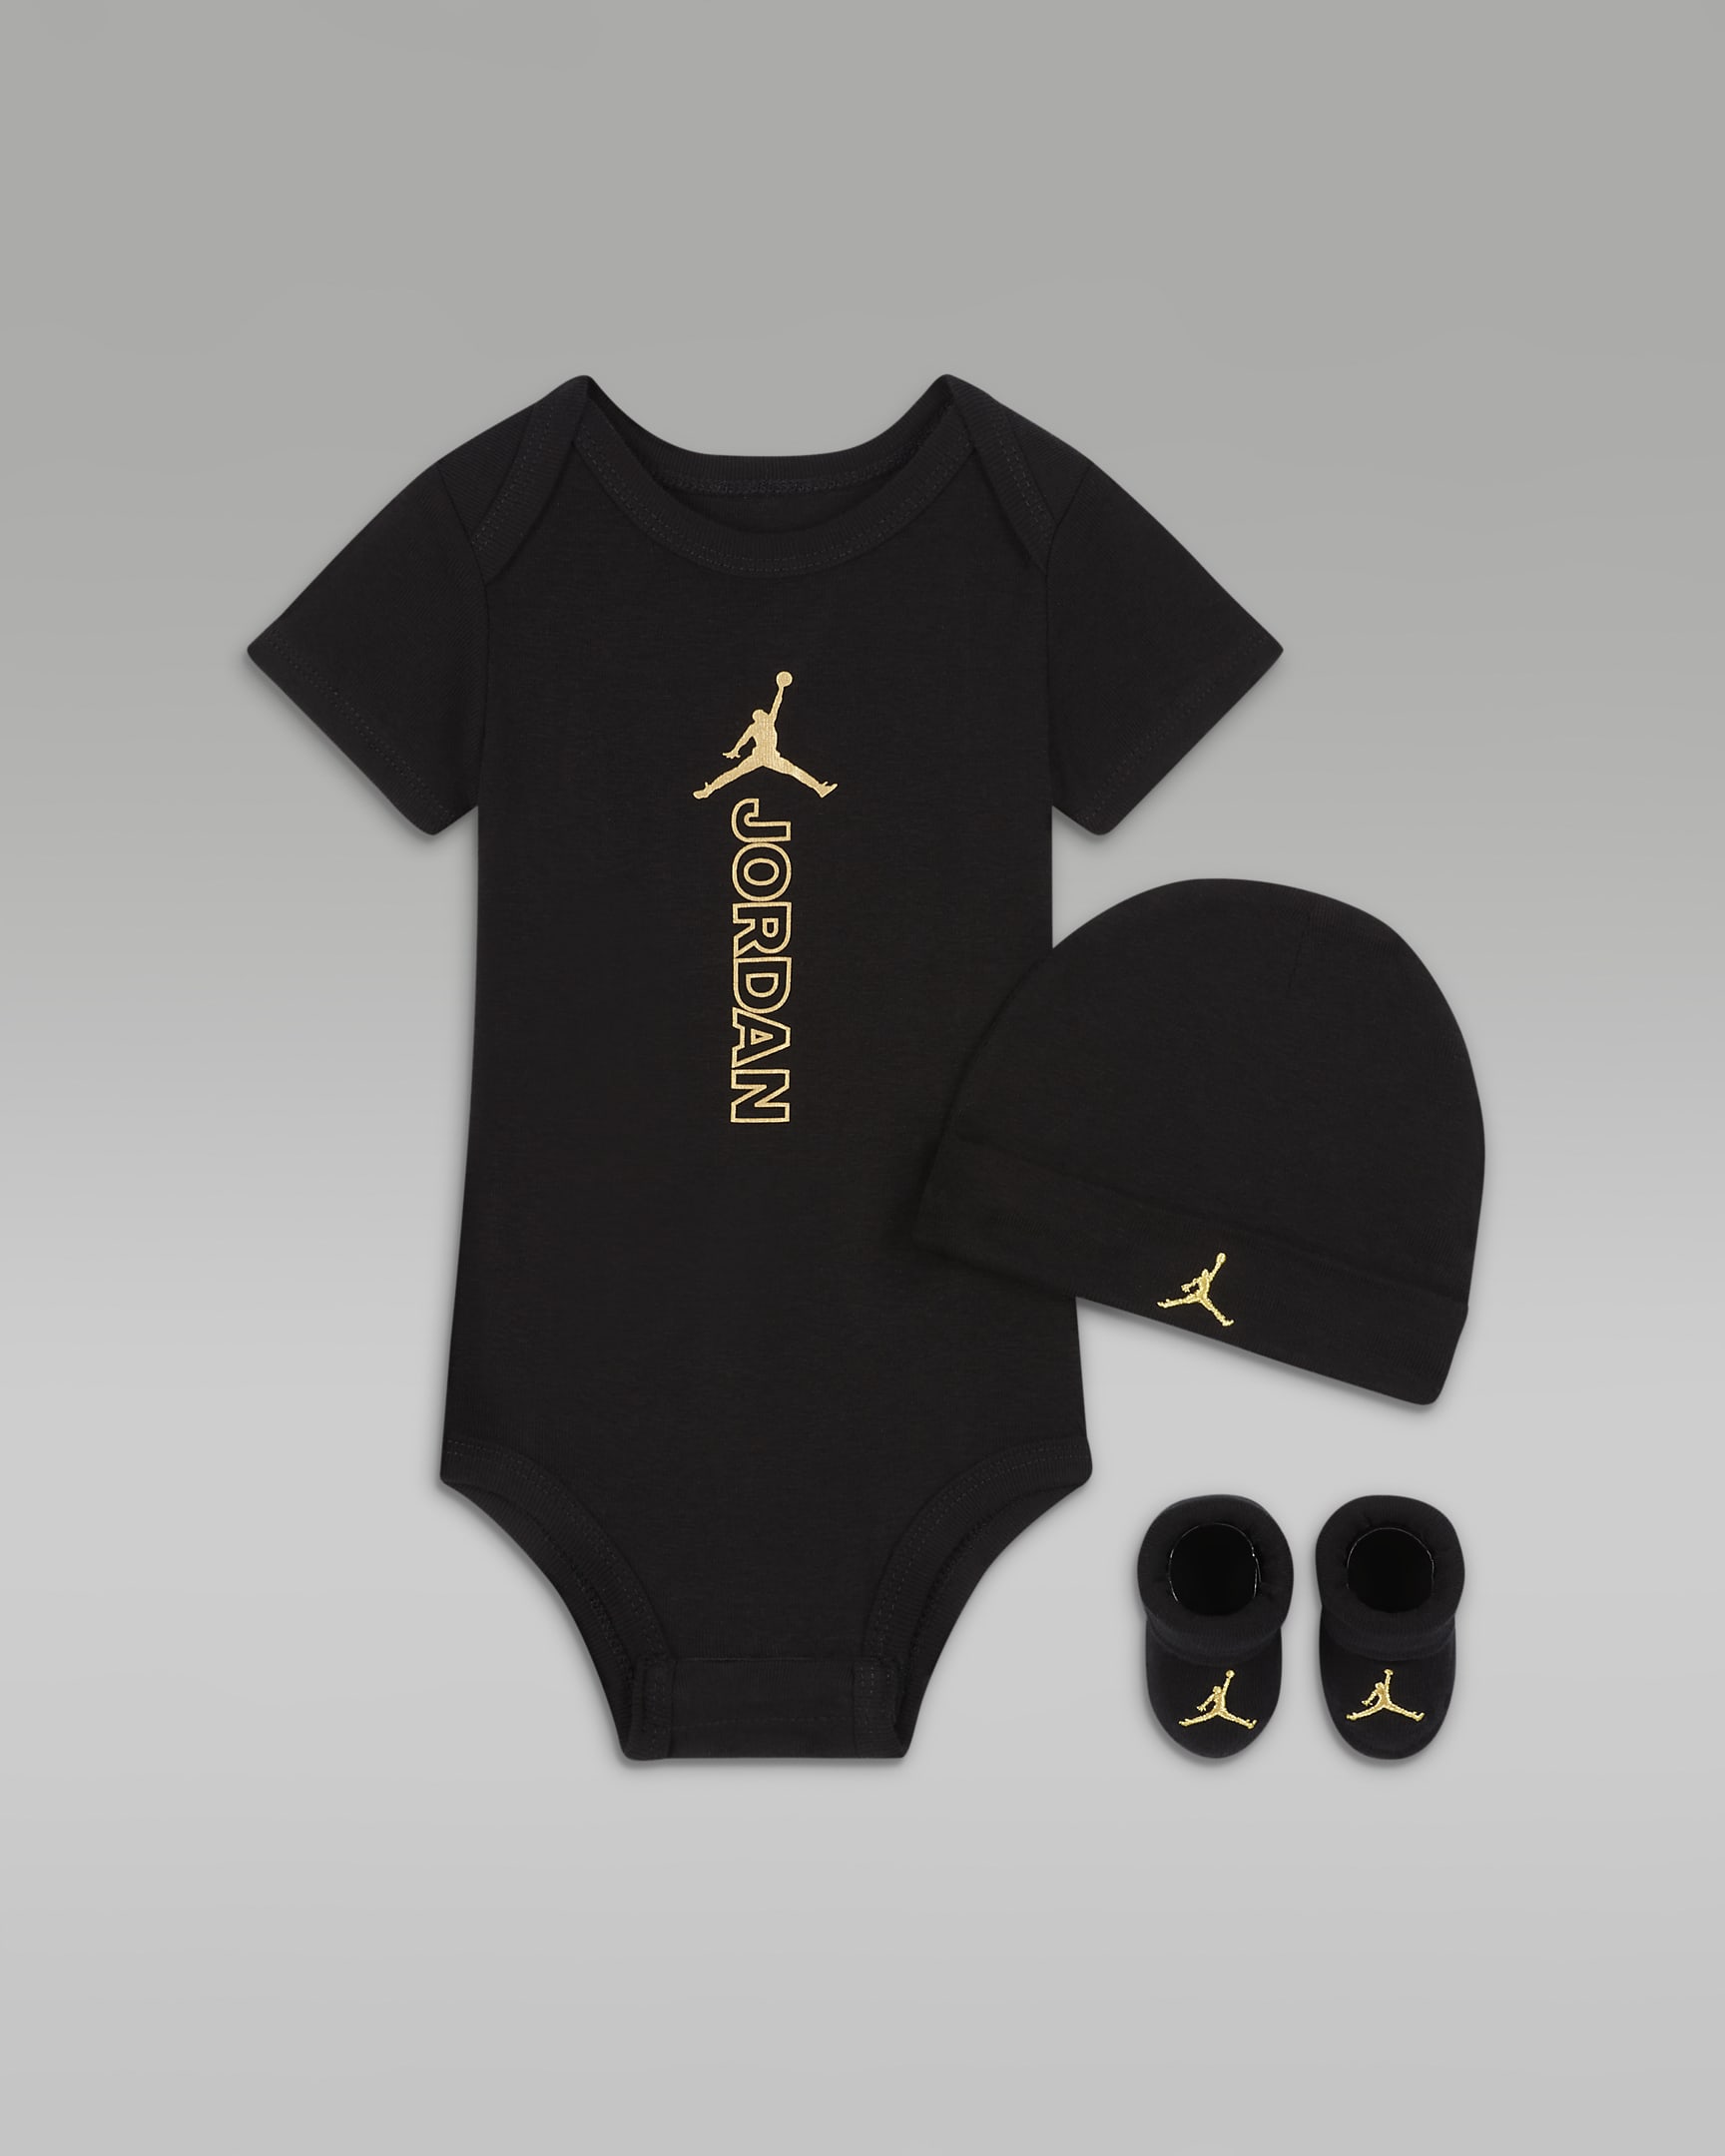 Jordan Black & Gold Bodysuit, Hat and Booties Box Set Baby Set. Nike NL